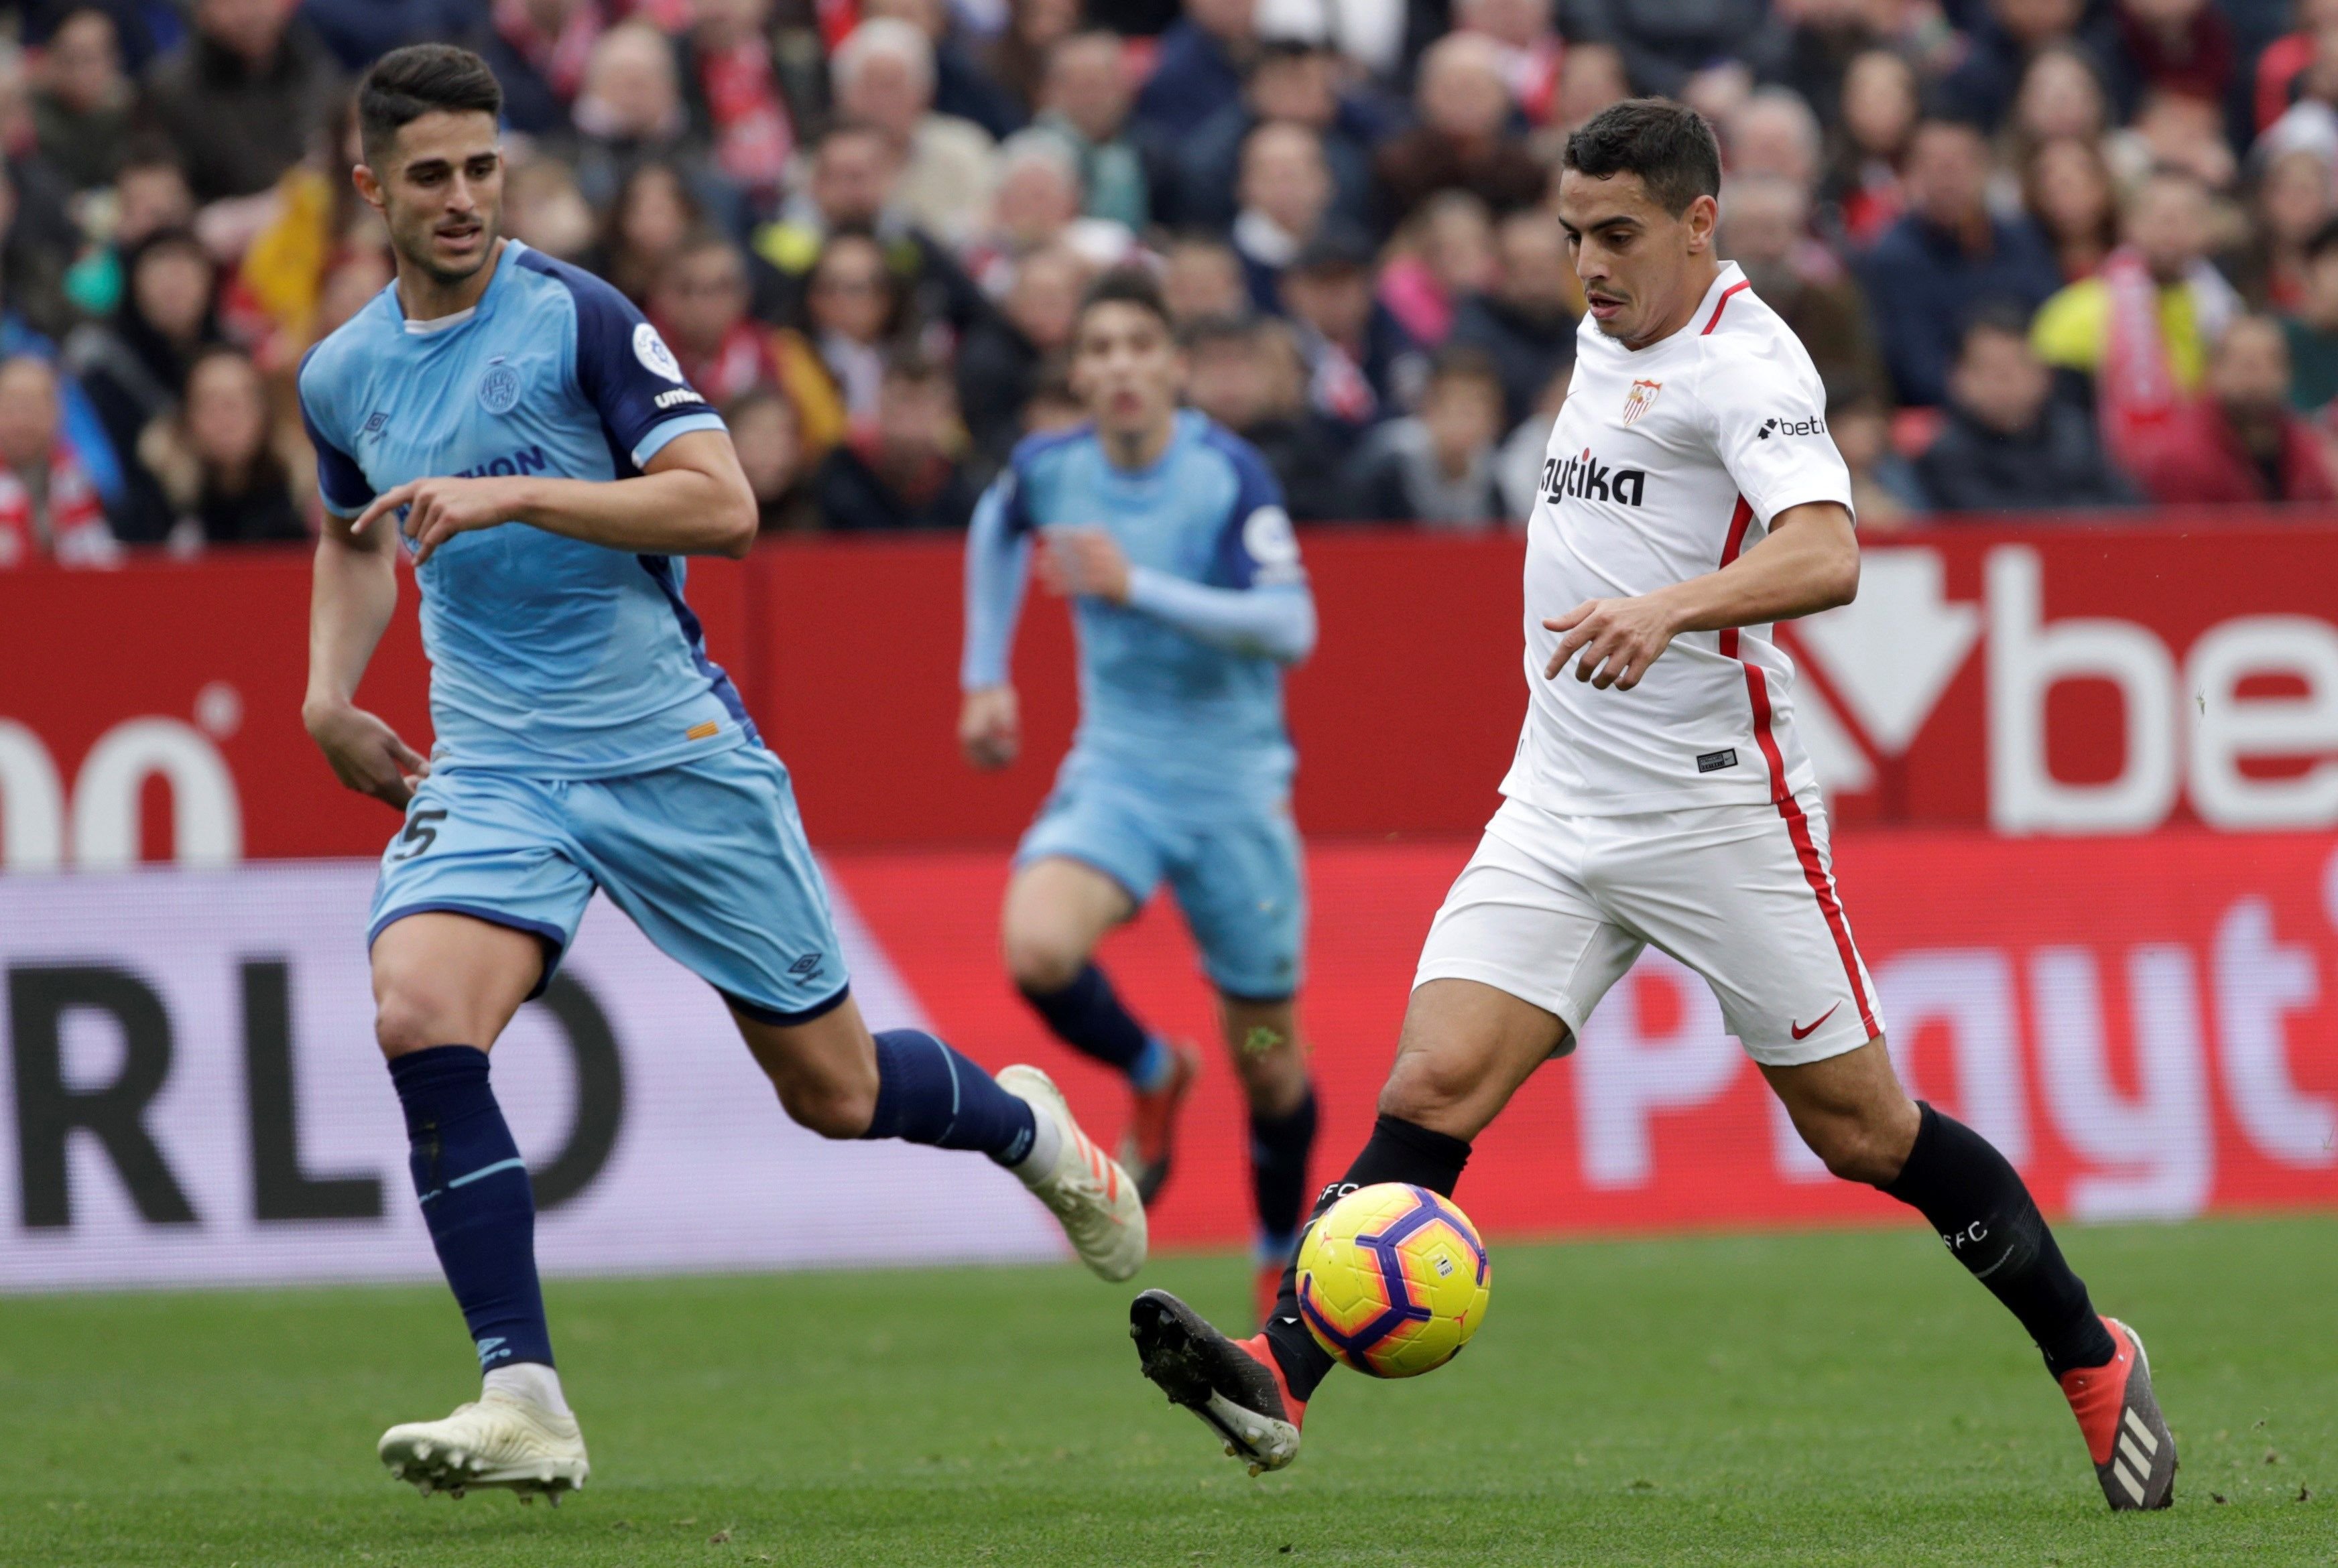 El Girona naufraga en Sevilla (2-0)